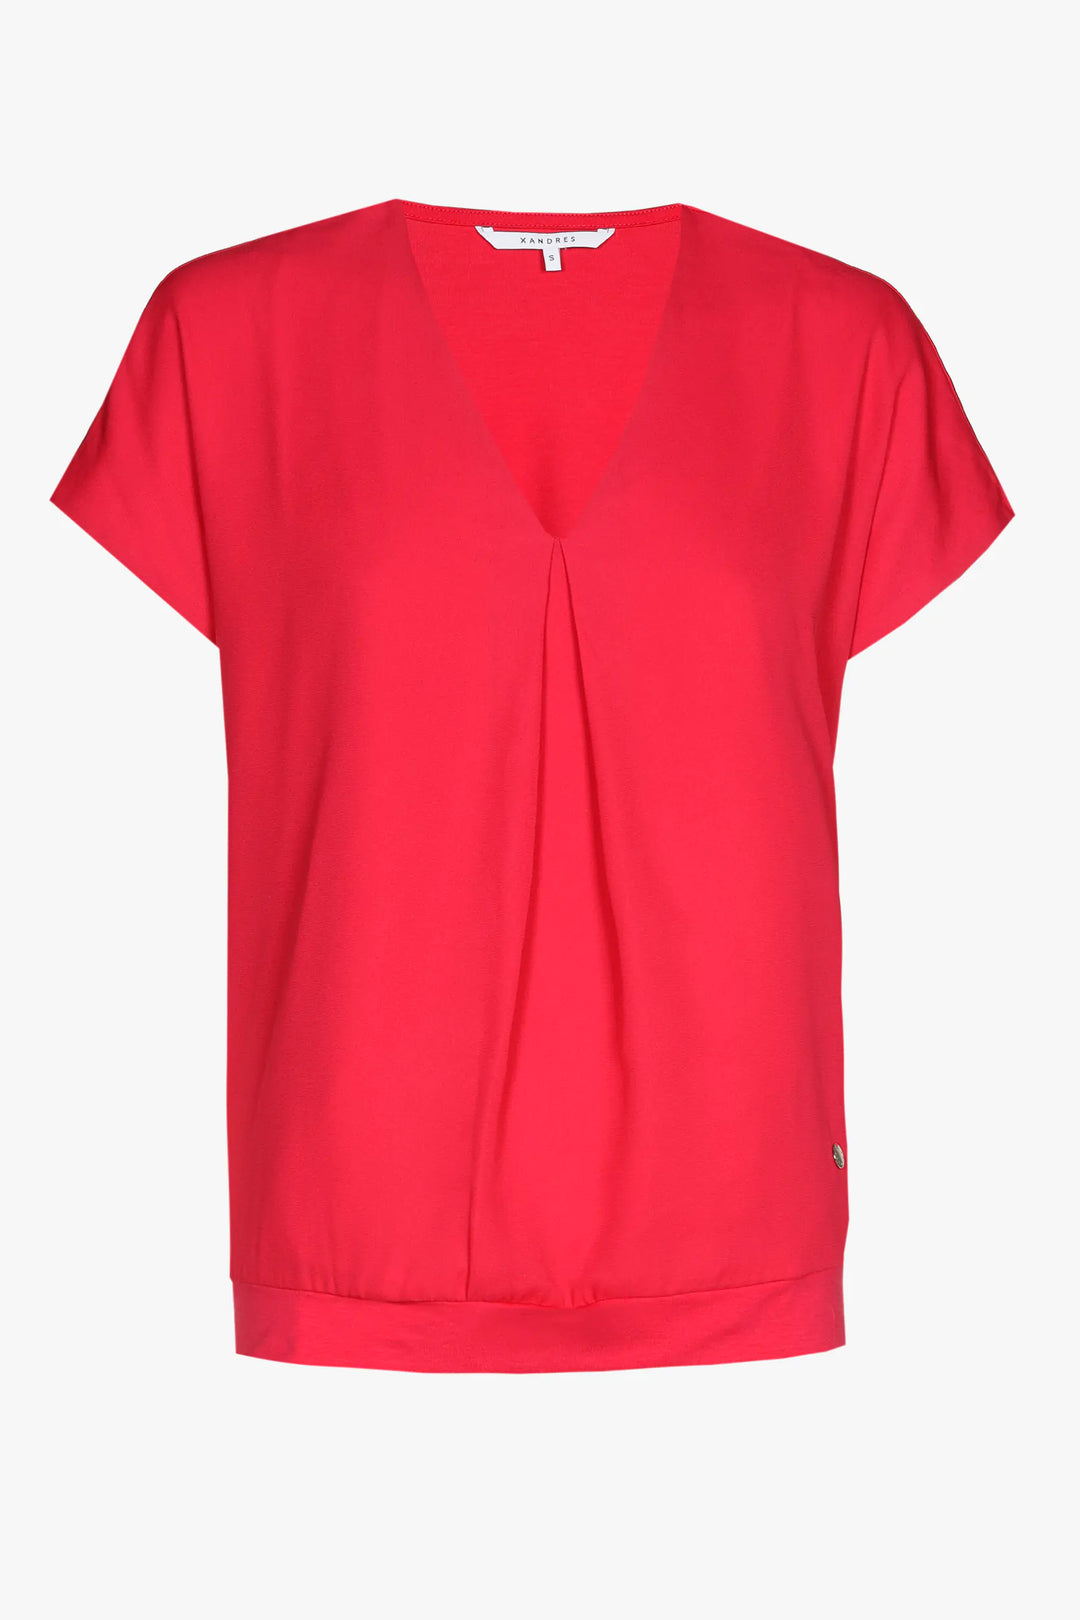 hot pink shirt - xandres - - grote maten - dameskleding - kledingwinkel - herent - leuven